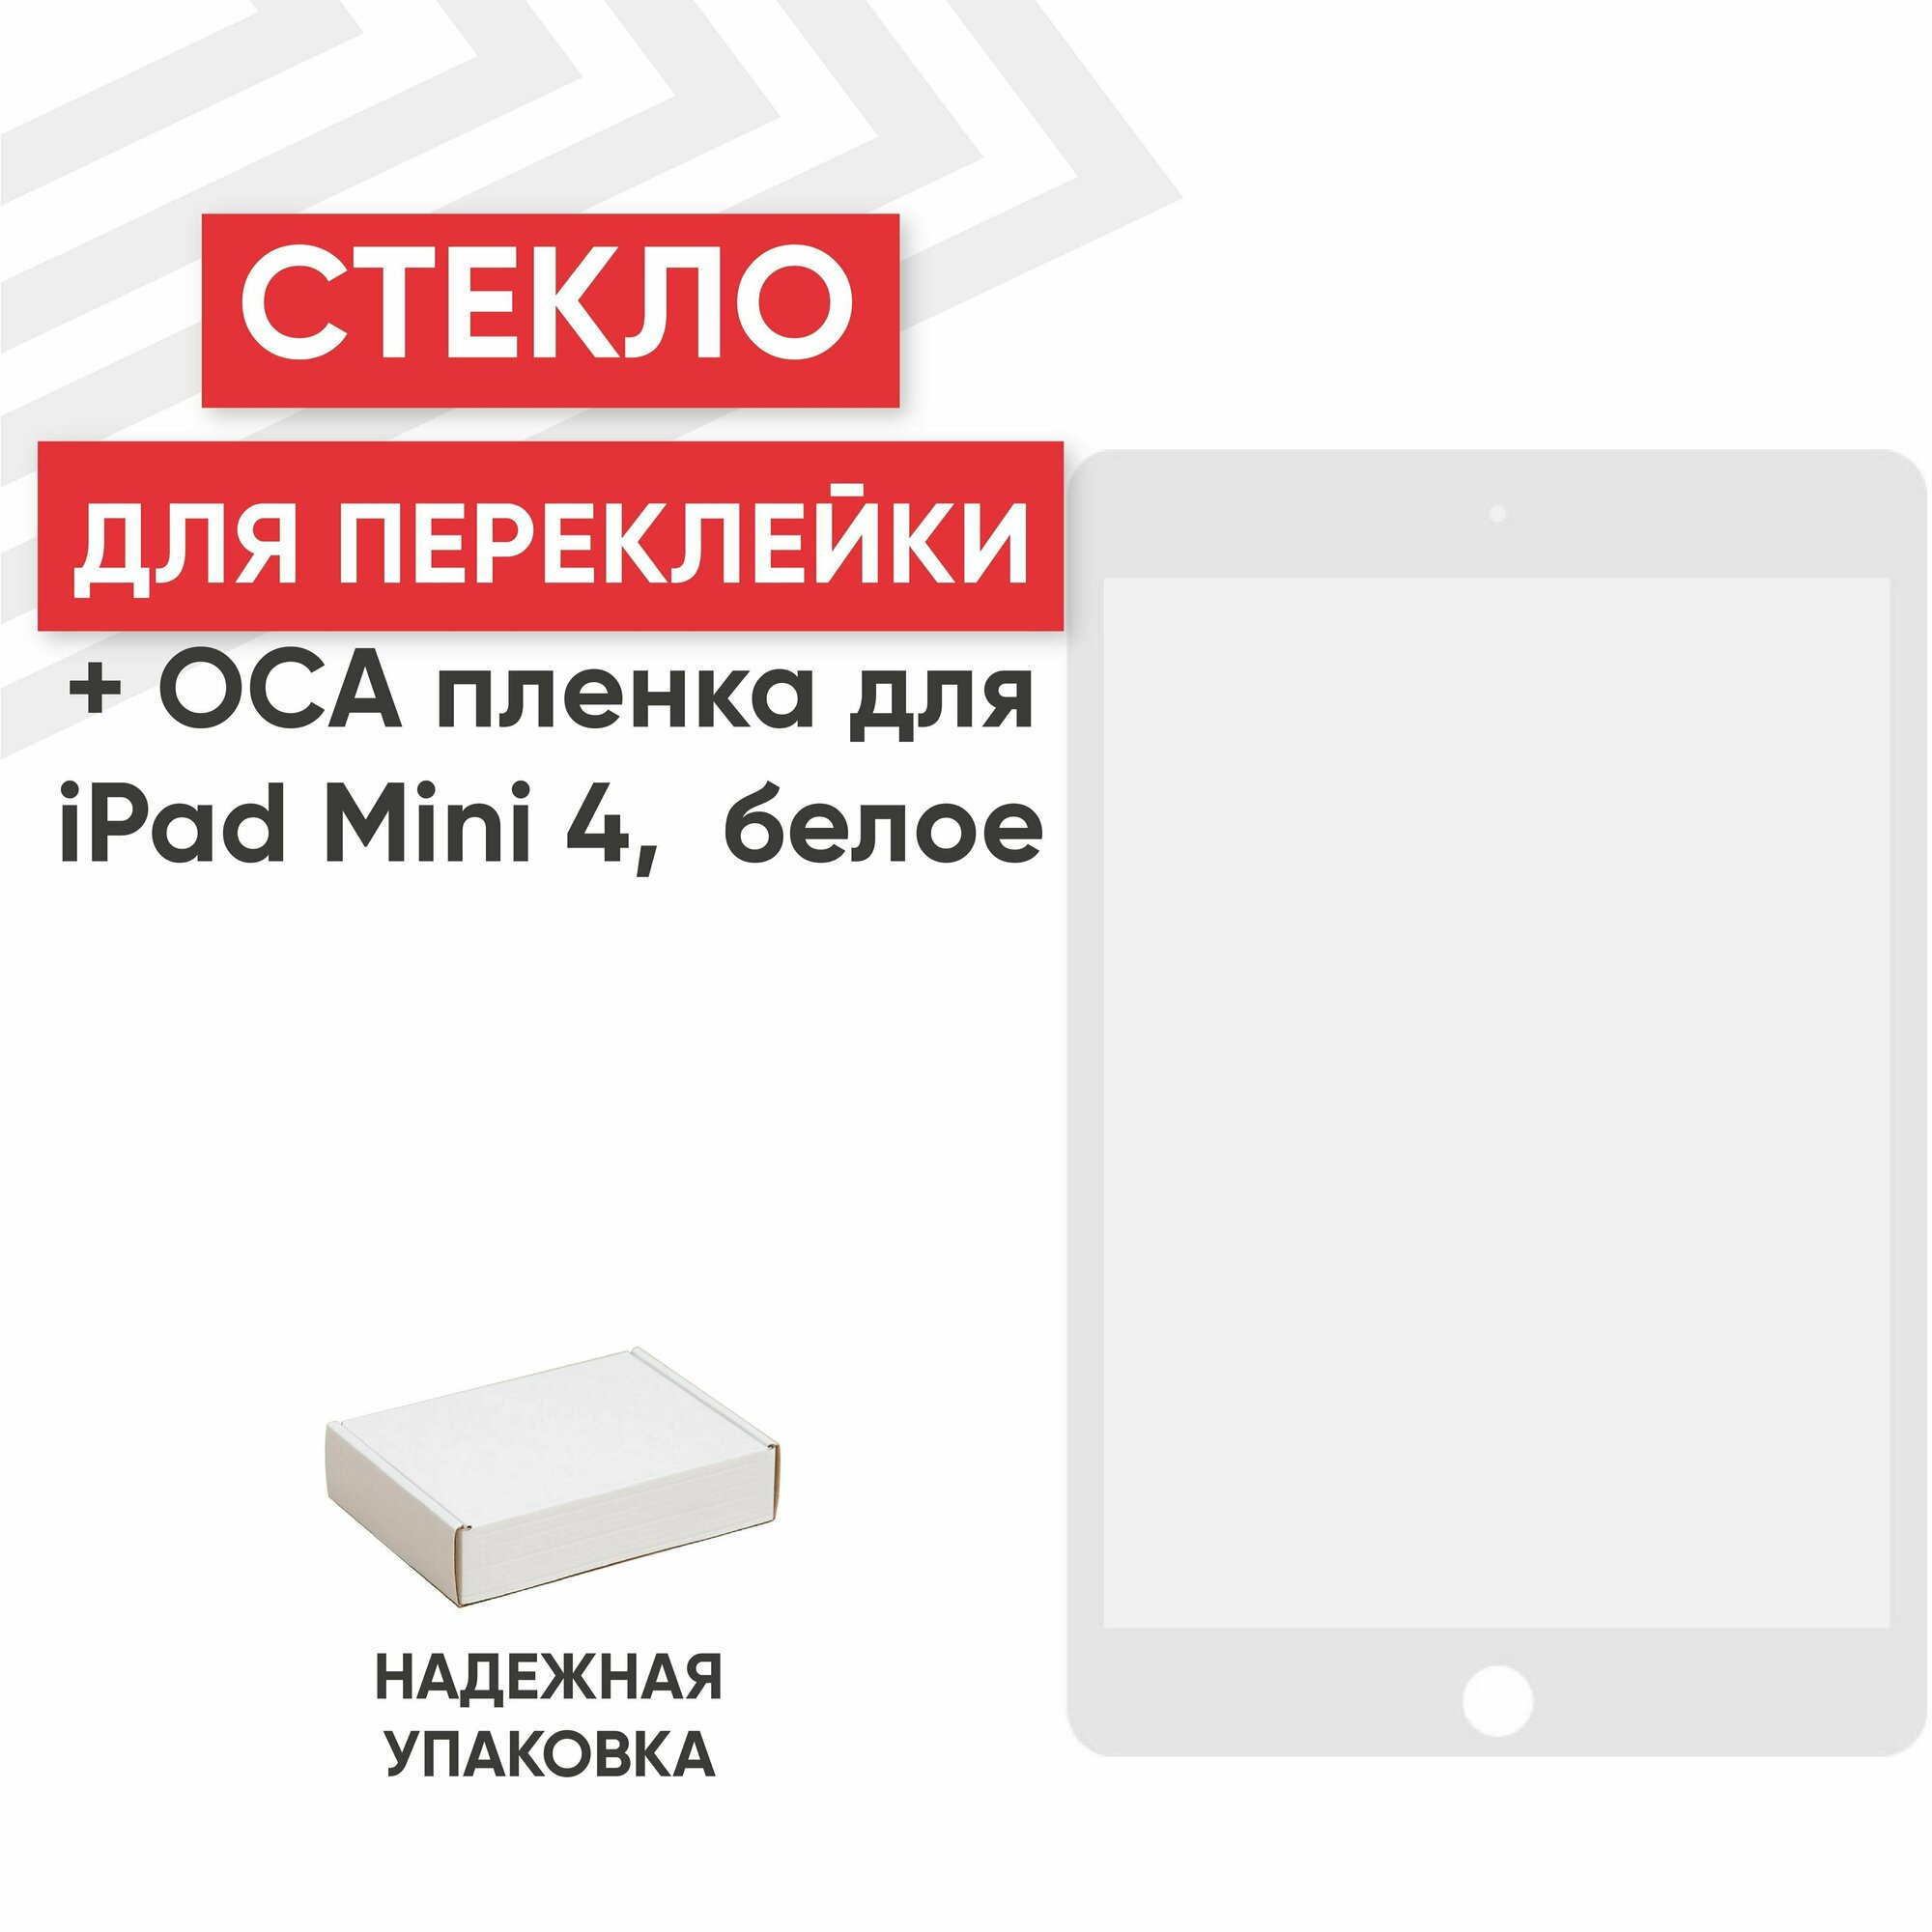 Стекло RageX для переклейки дисплея c OCA пленкой для iPad Mini 4 Mini 5 белое